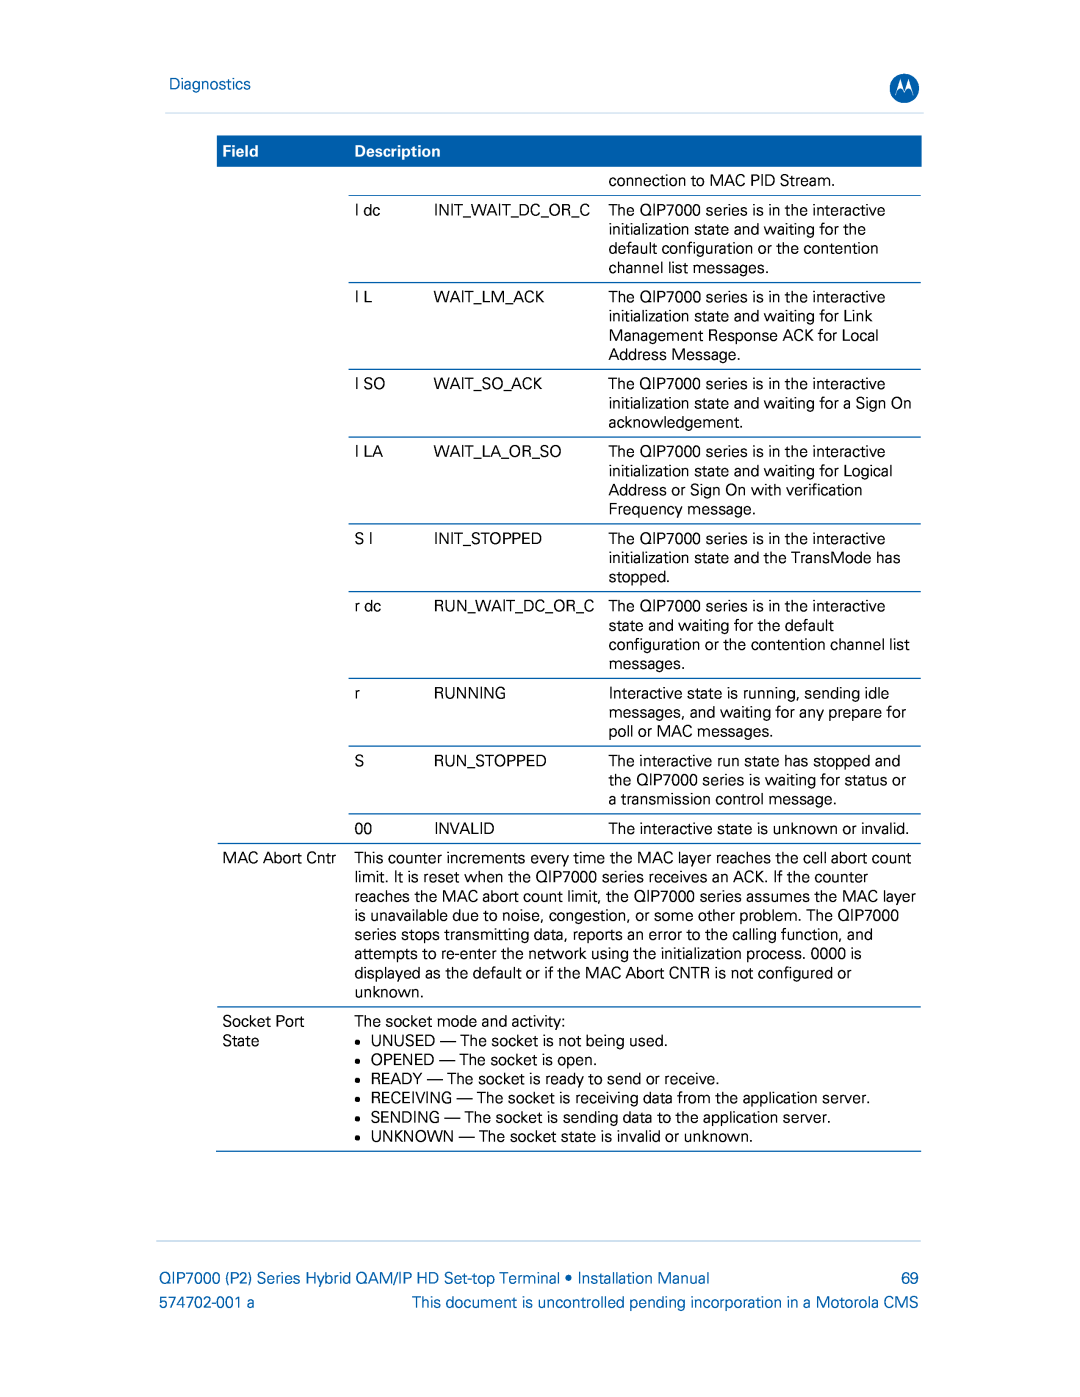 Motorola QIP7000 installation manual Diagnostics, Field, Description, 574702-001 a 